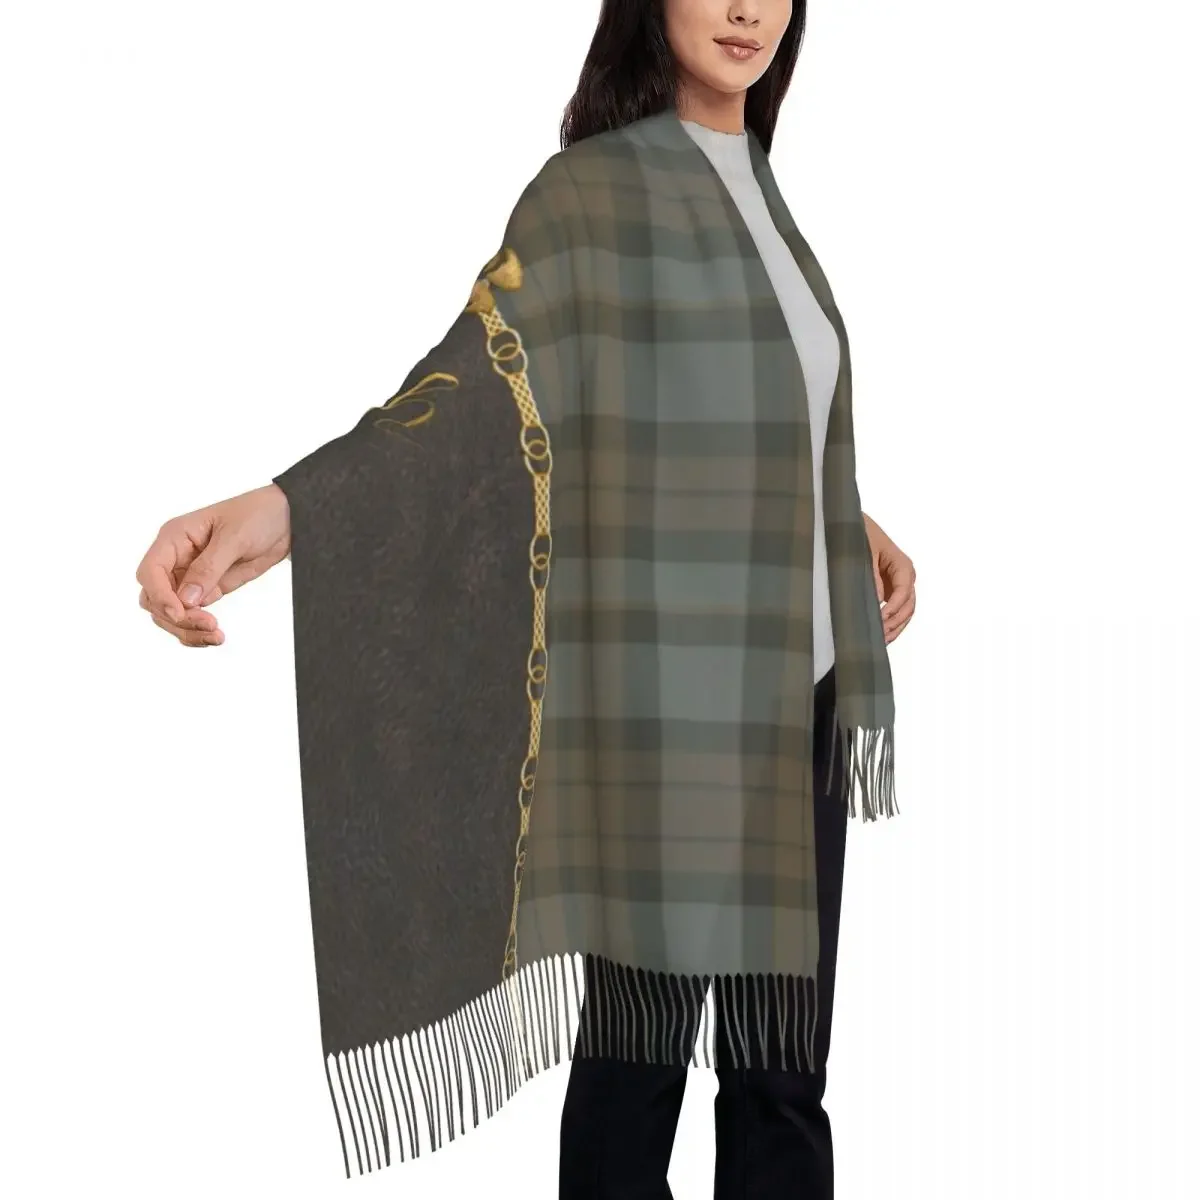 Fashion Leather And Tartan Sassenach Pattern Tassel Scarf Women Winter Warm Shawls Wraps Lady Dragonfly Outlander Scarves